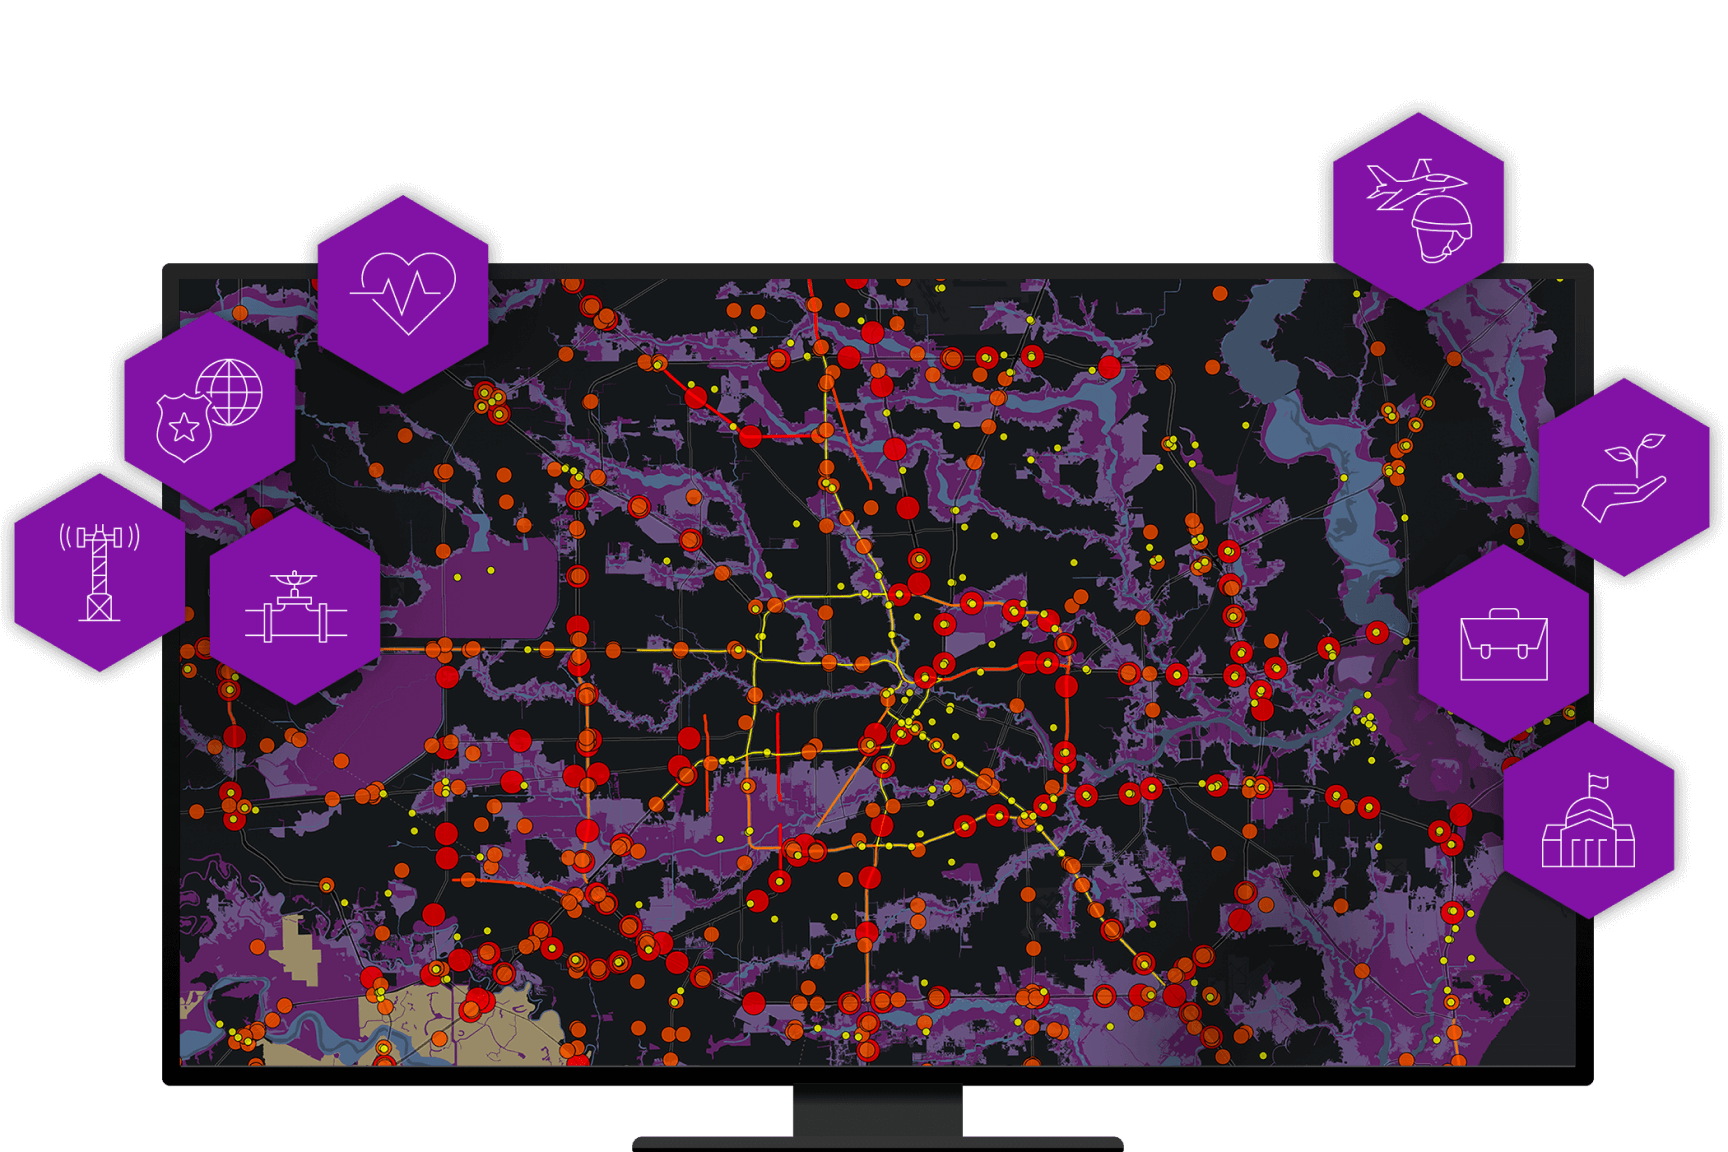 Écran d’ordinateur affichant une carte en violet et noir avec de nombreux points rouges dispersés